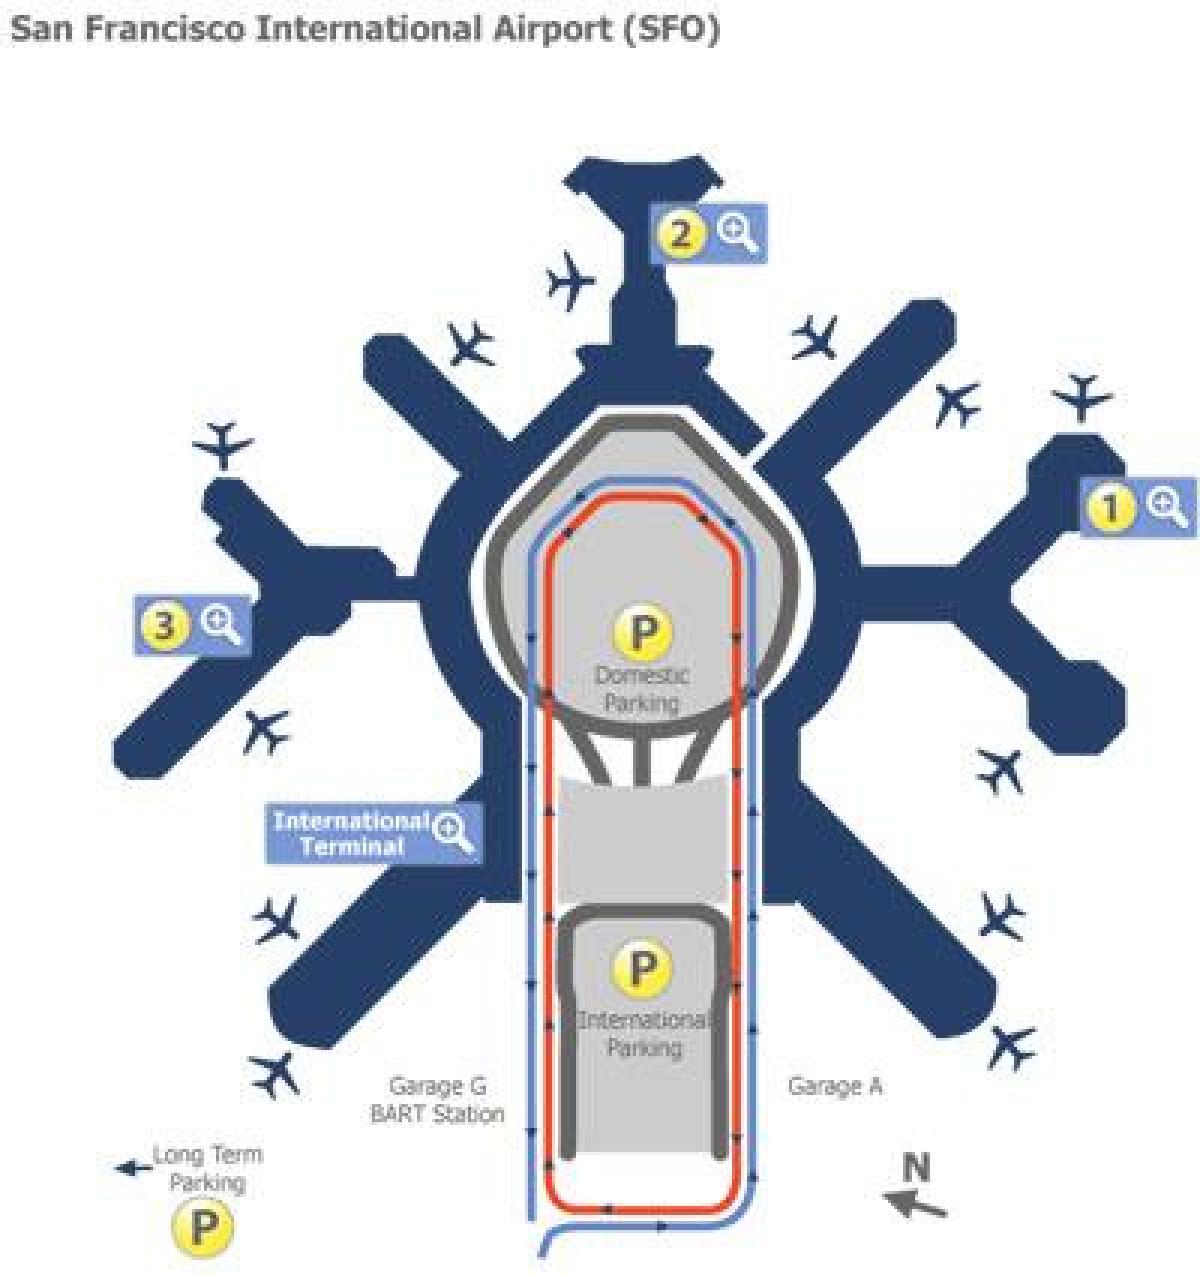 فرودگاه سان فرانسیسکو دروازه نقشه